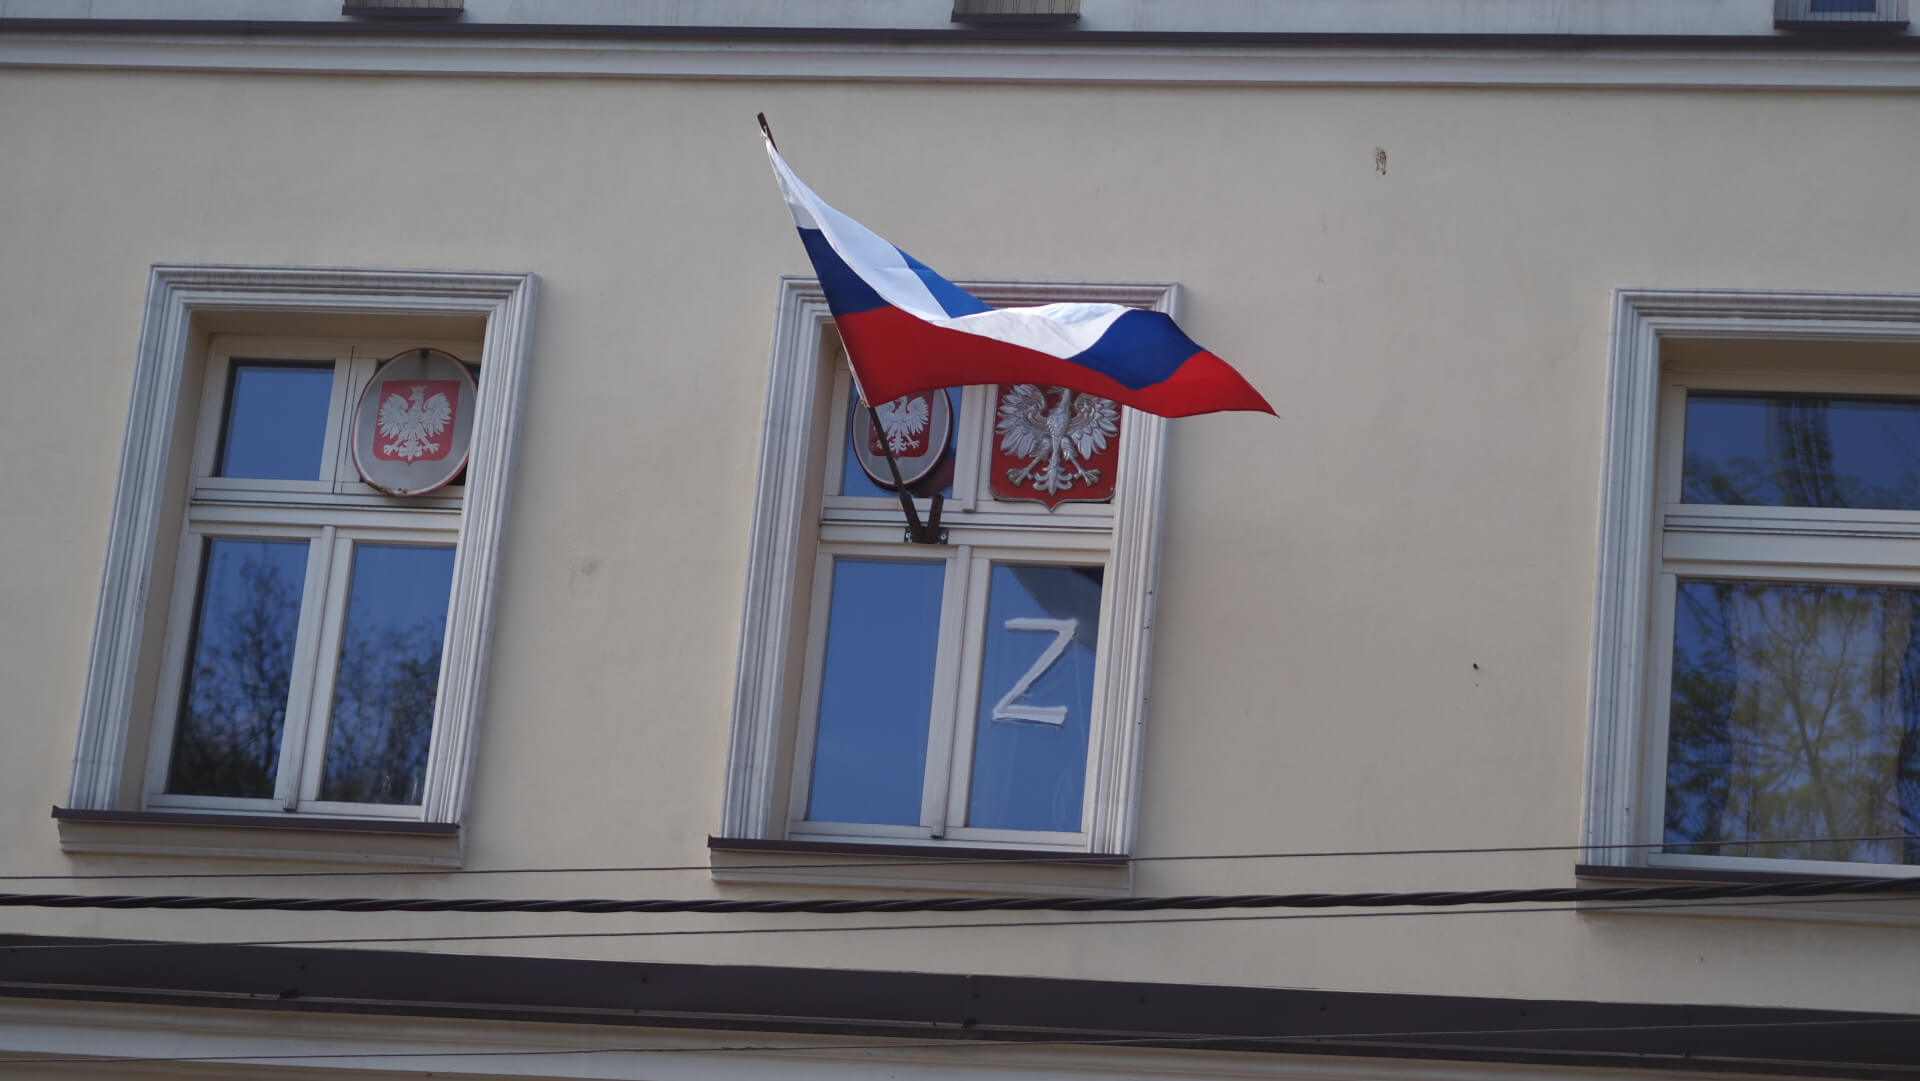 Rosyjskie symbole w Chorzowie 8